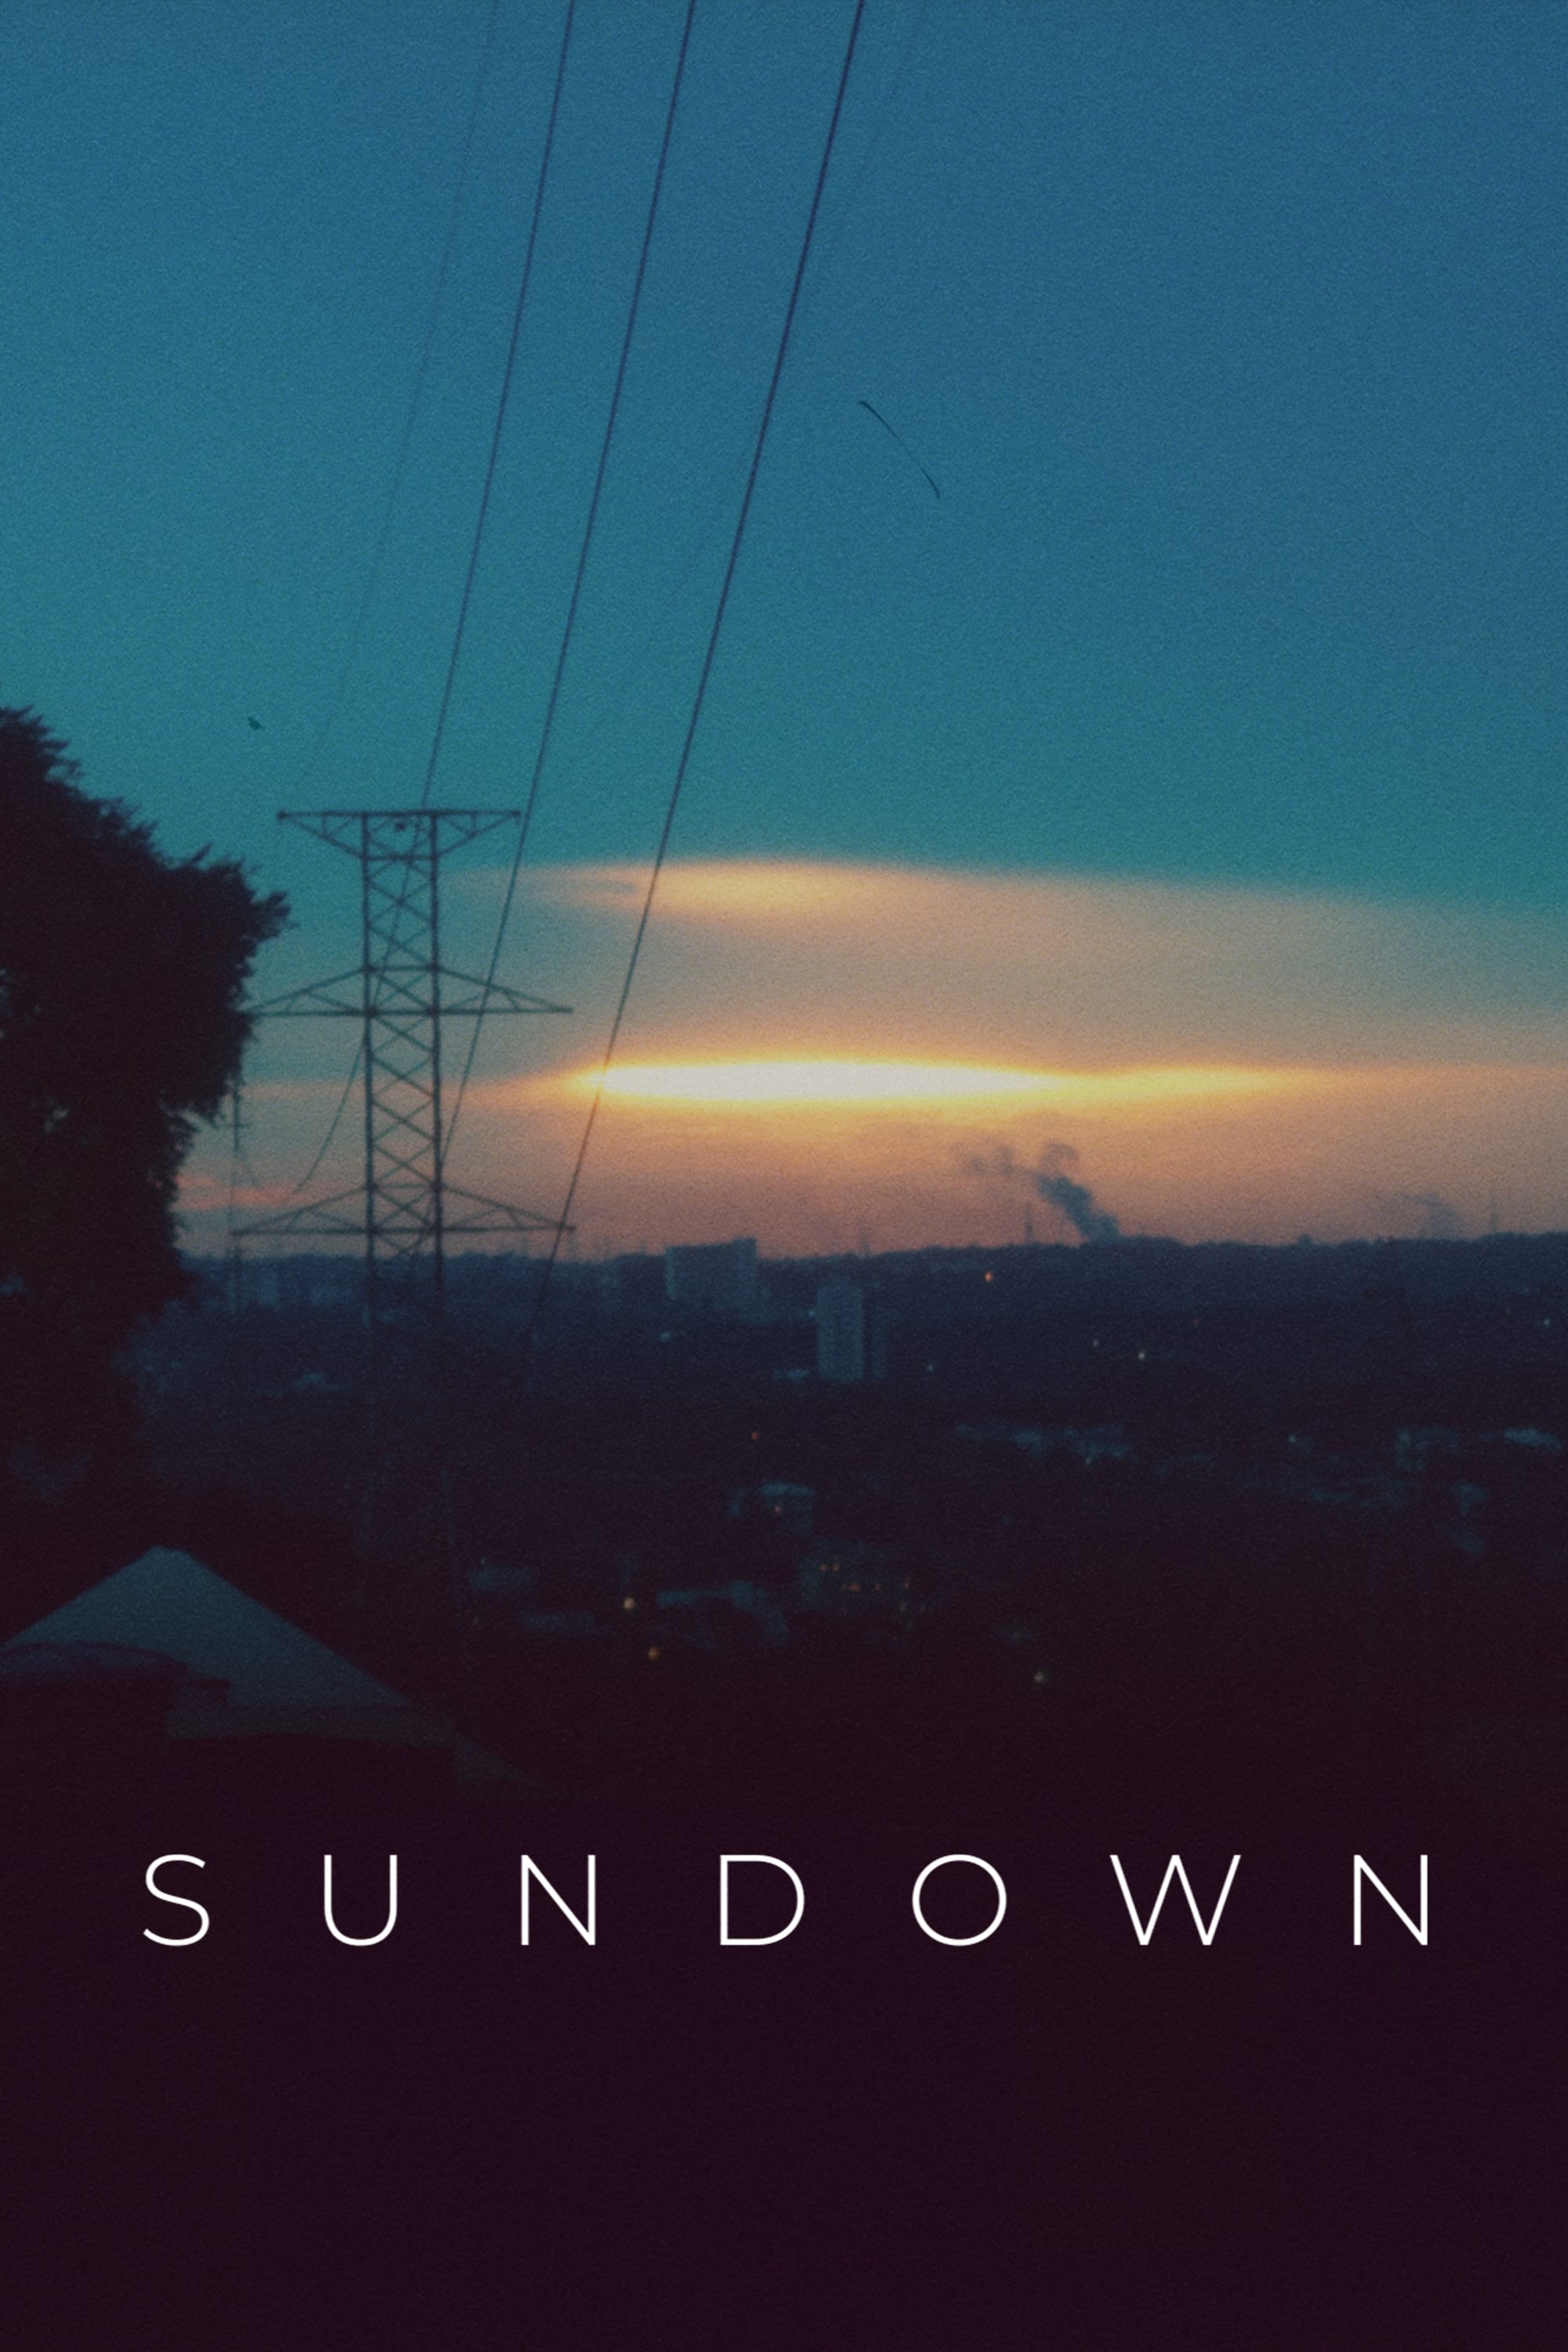 Sundown